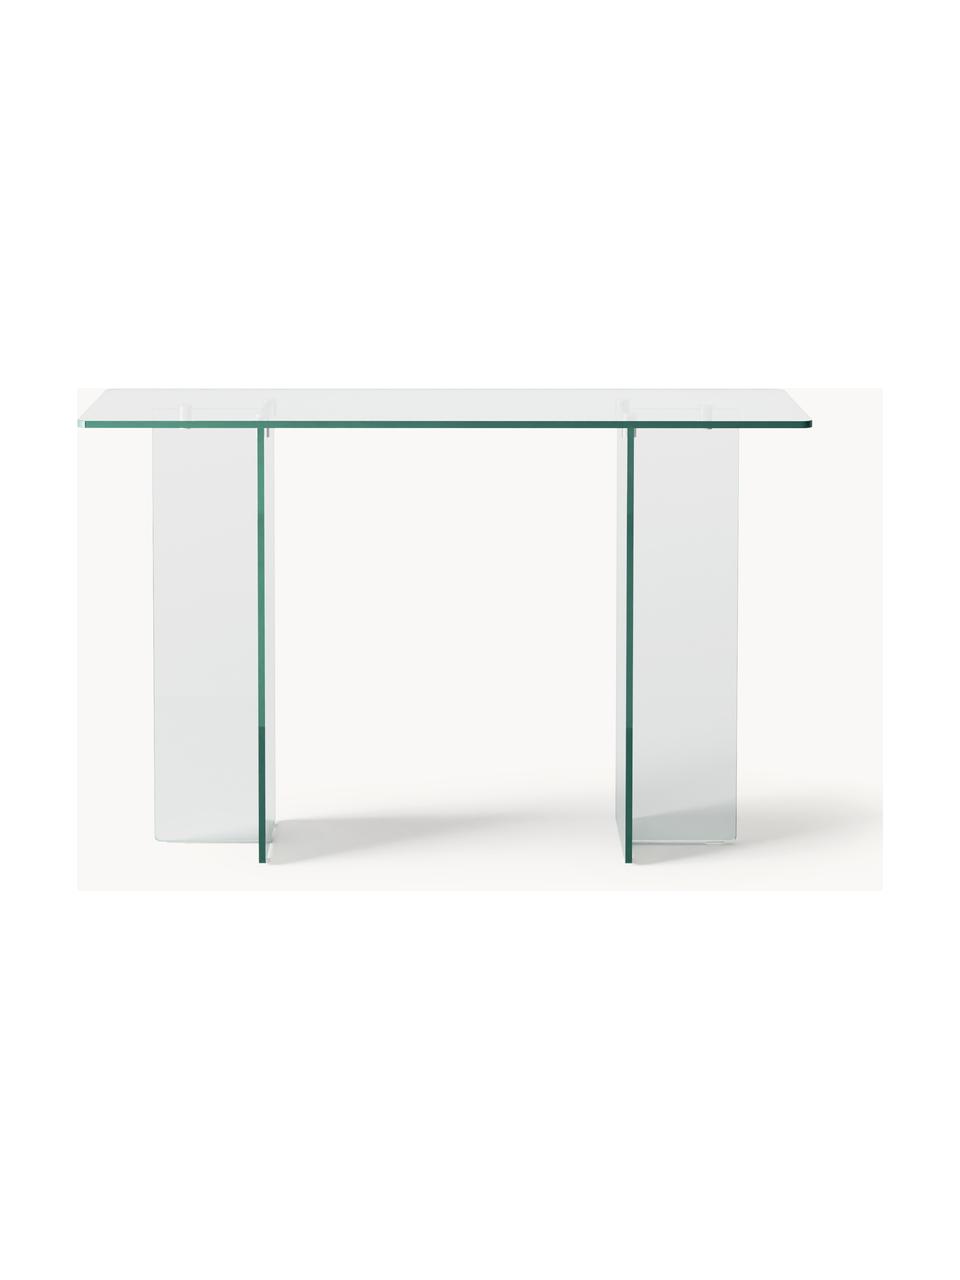 Konsola ze szkła Anouk, Szkło, Transparentny, S 120 x W 75 cm